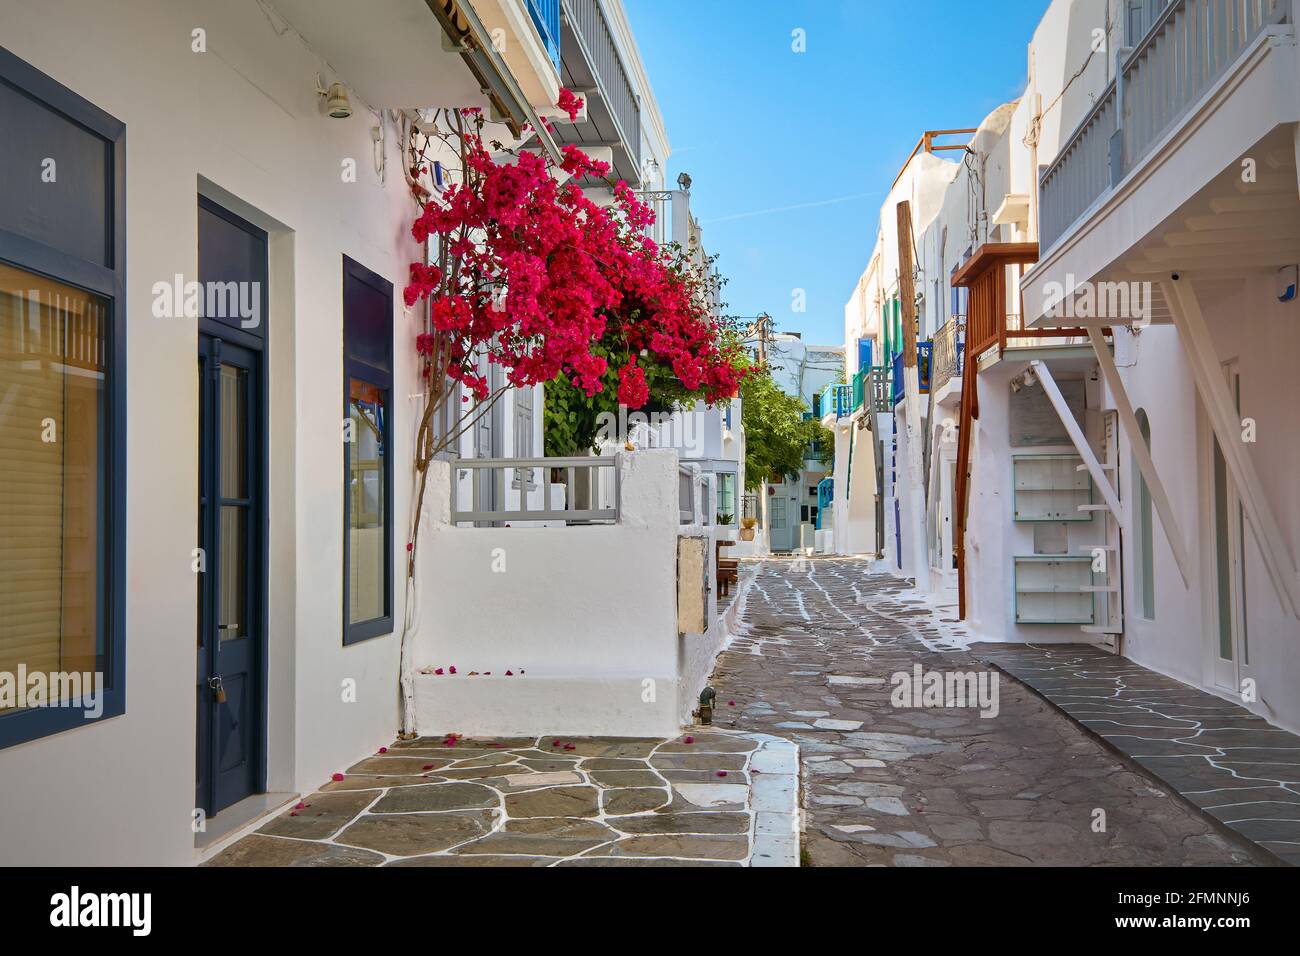 Schöne, traditionelle, enge Straßen griechischer Inselstädte. Weiß getünchte Häuser, Bougainvillea, Balkone, Treppen, Geschäfte, Cafés. Mykonos, Griechenland Stockfoto